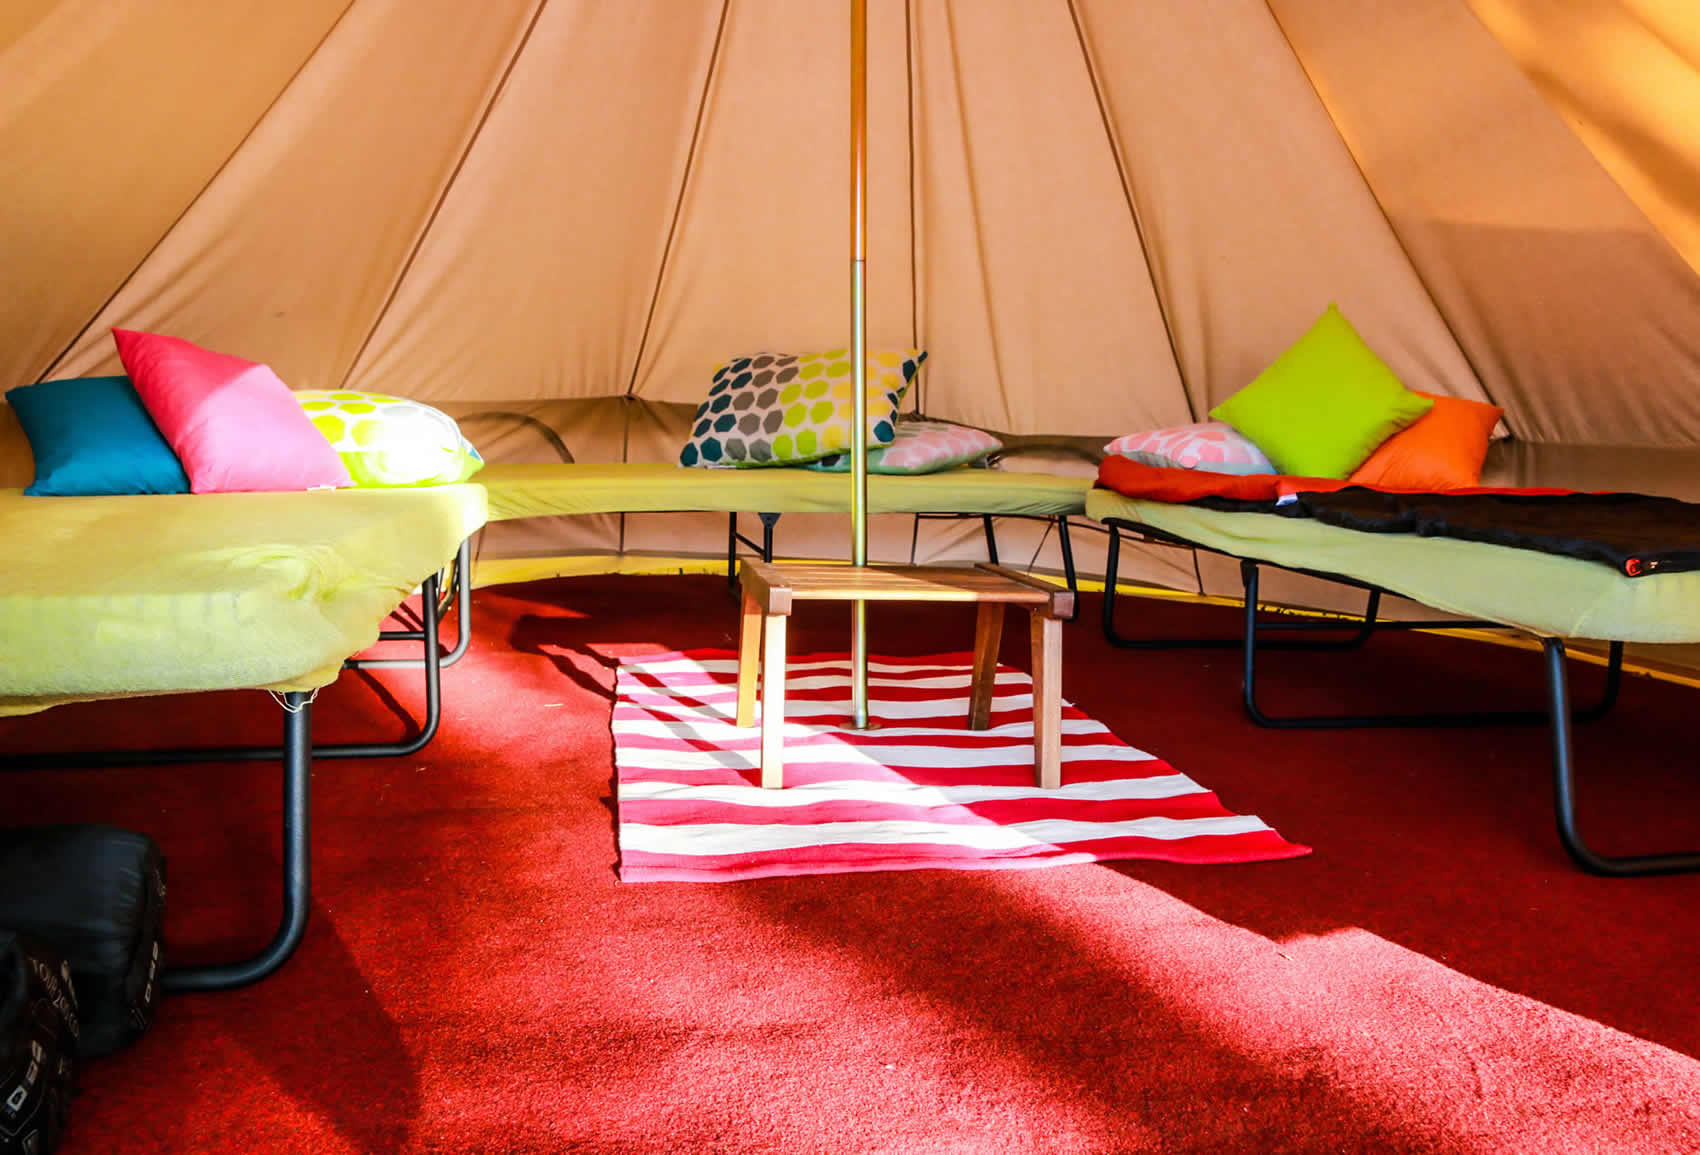 Šator za 2 osobe / Tent for 2 people (22€)